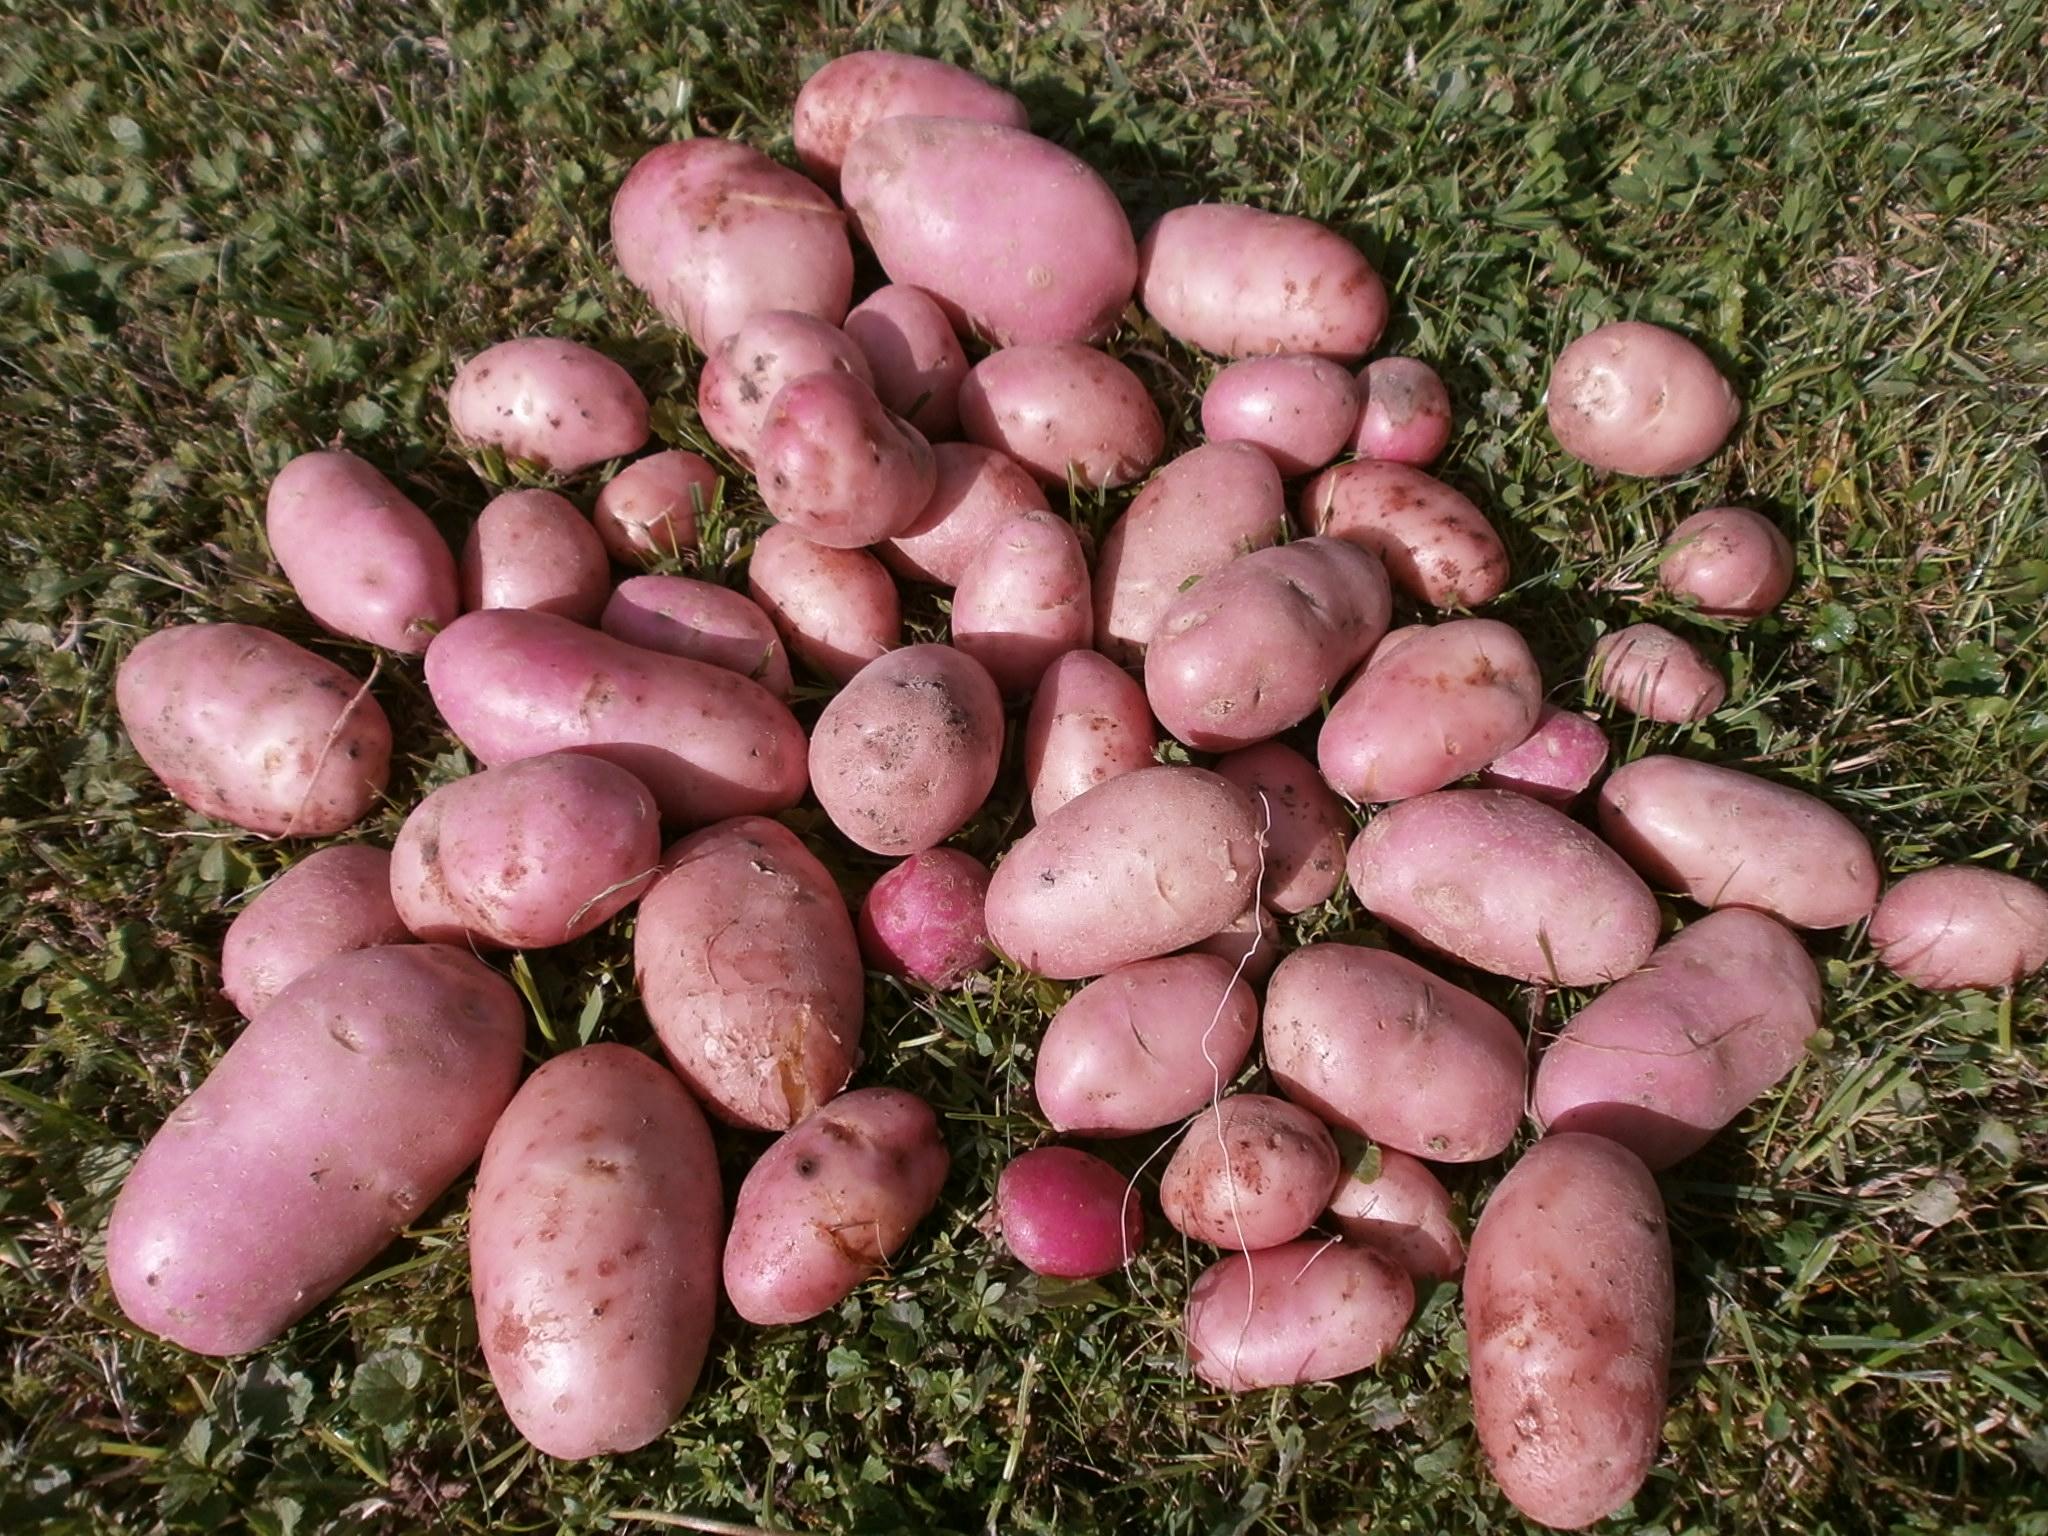 Беллароза картофель описание с фото